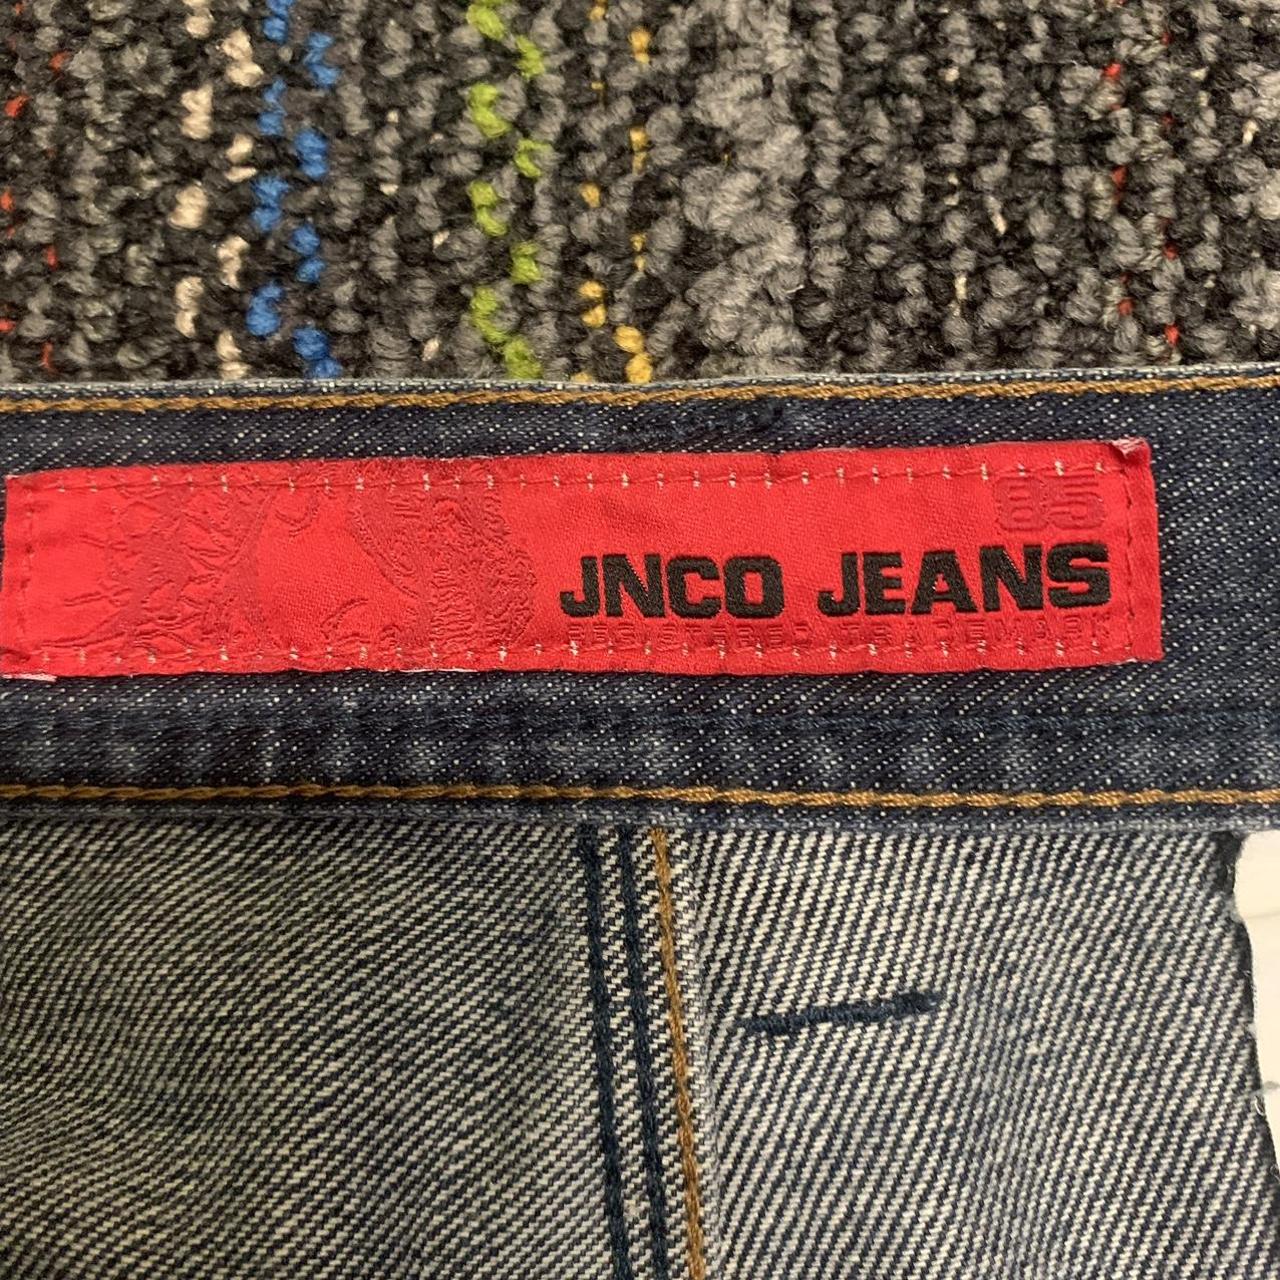 jnco, original JNCO jeans from the 80s, SUPER RARE,... - Depop